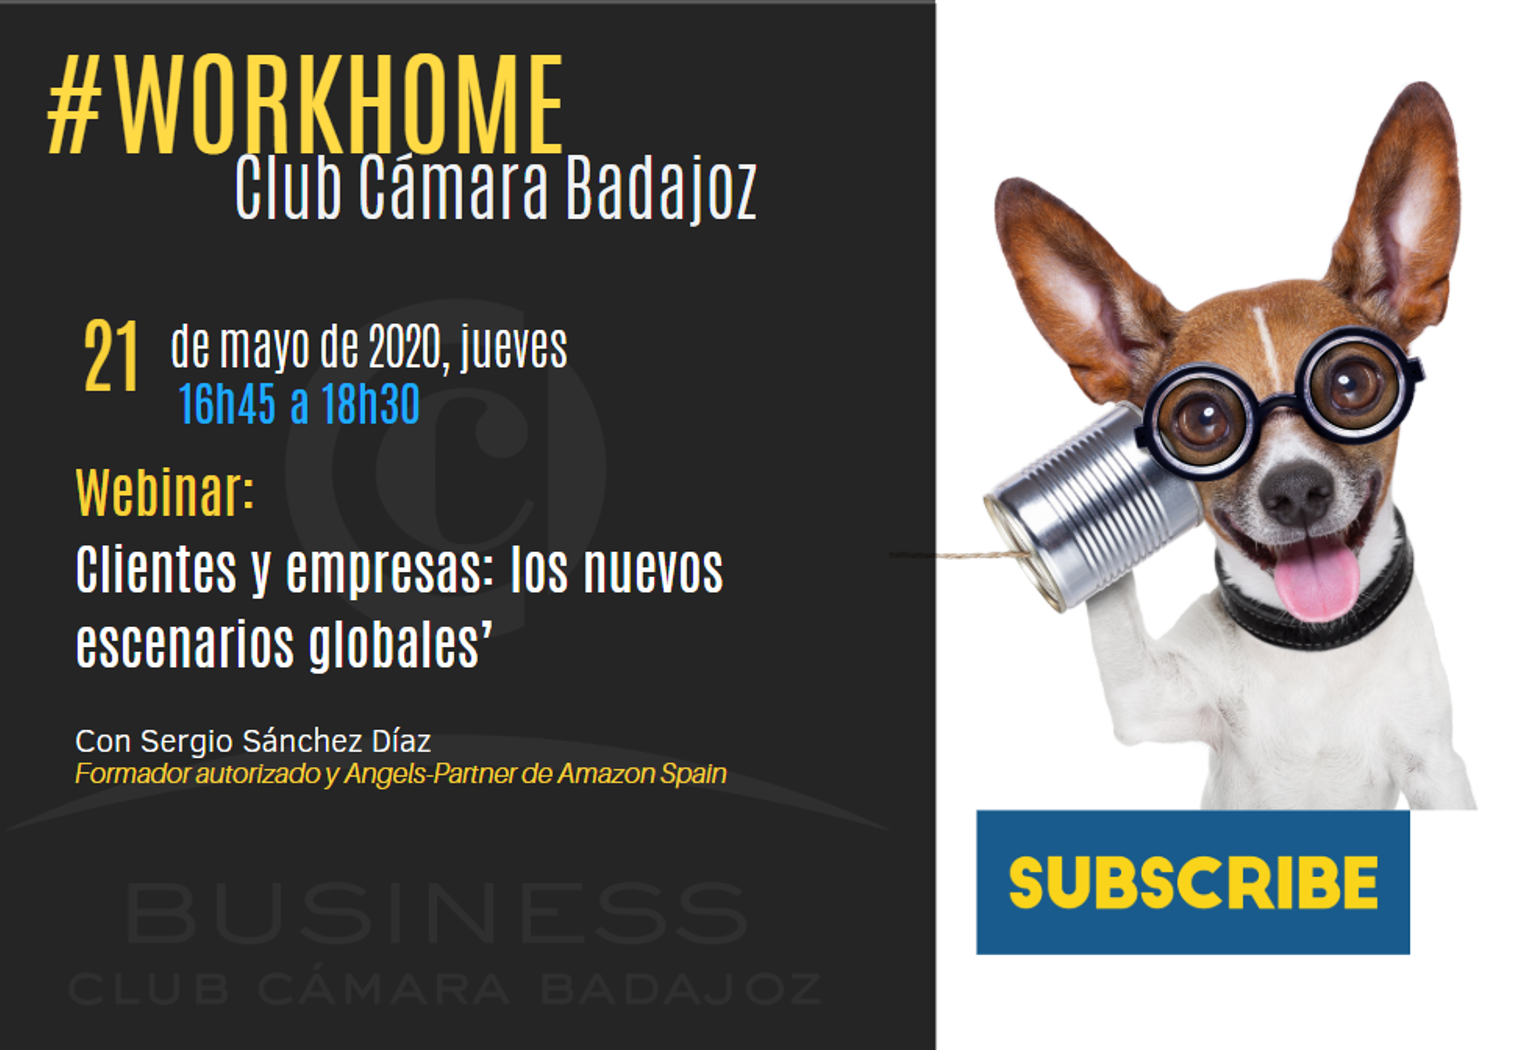 WORKHOME Club Cámara Badajoz- Clientes y empresas: los nuevos escenarios globales